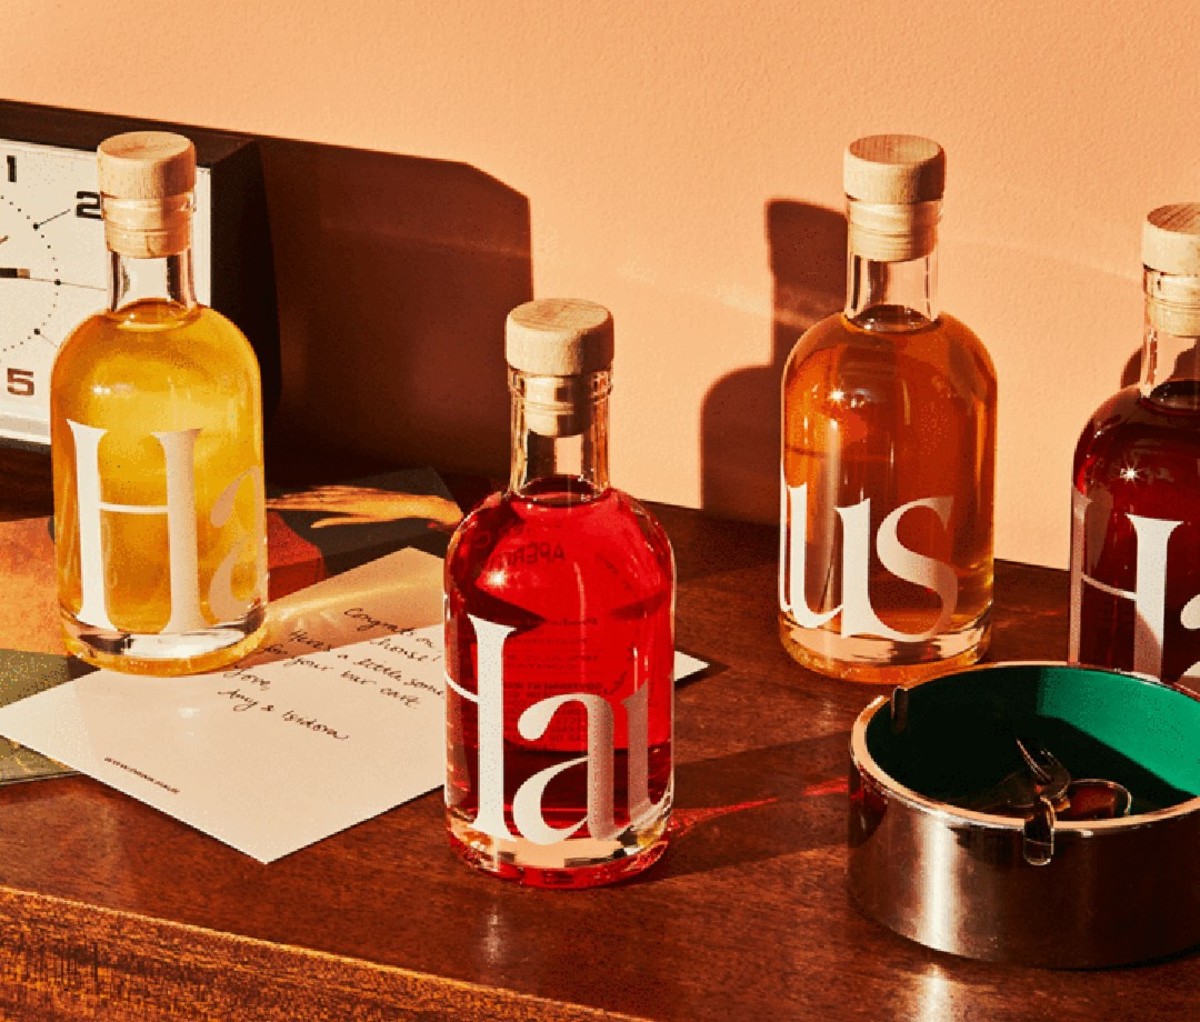 Four bottles from the Haus Sampler Kit.